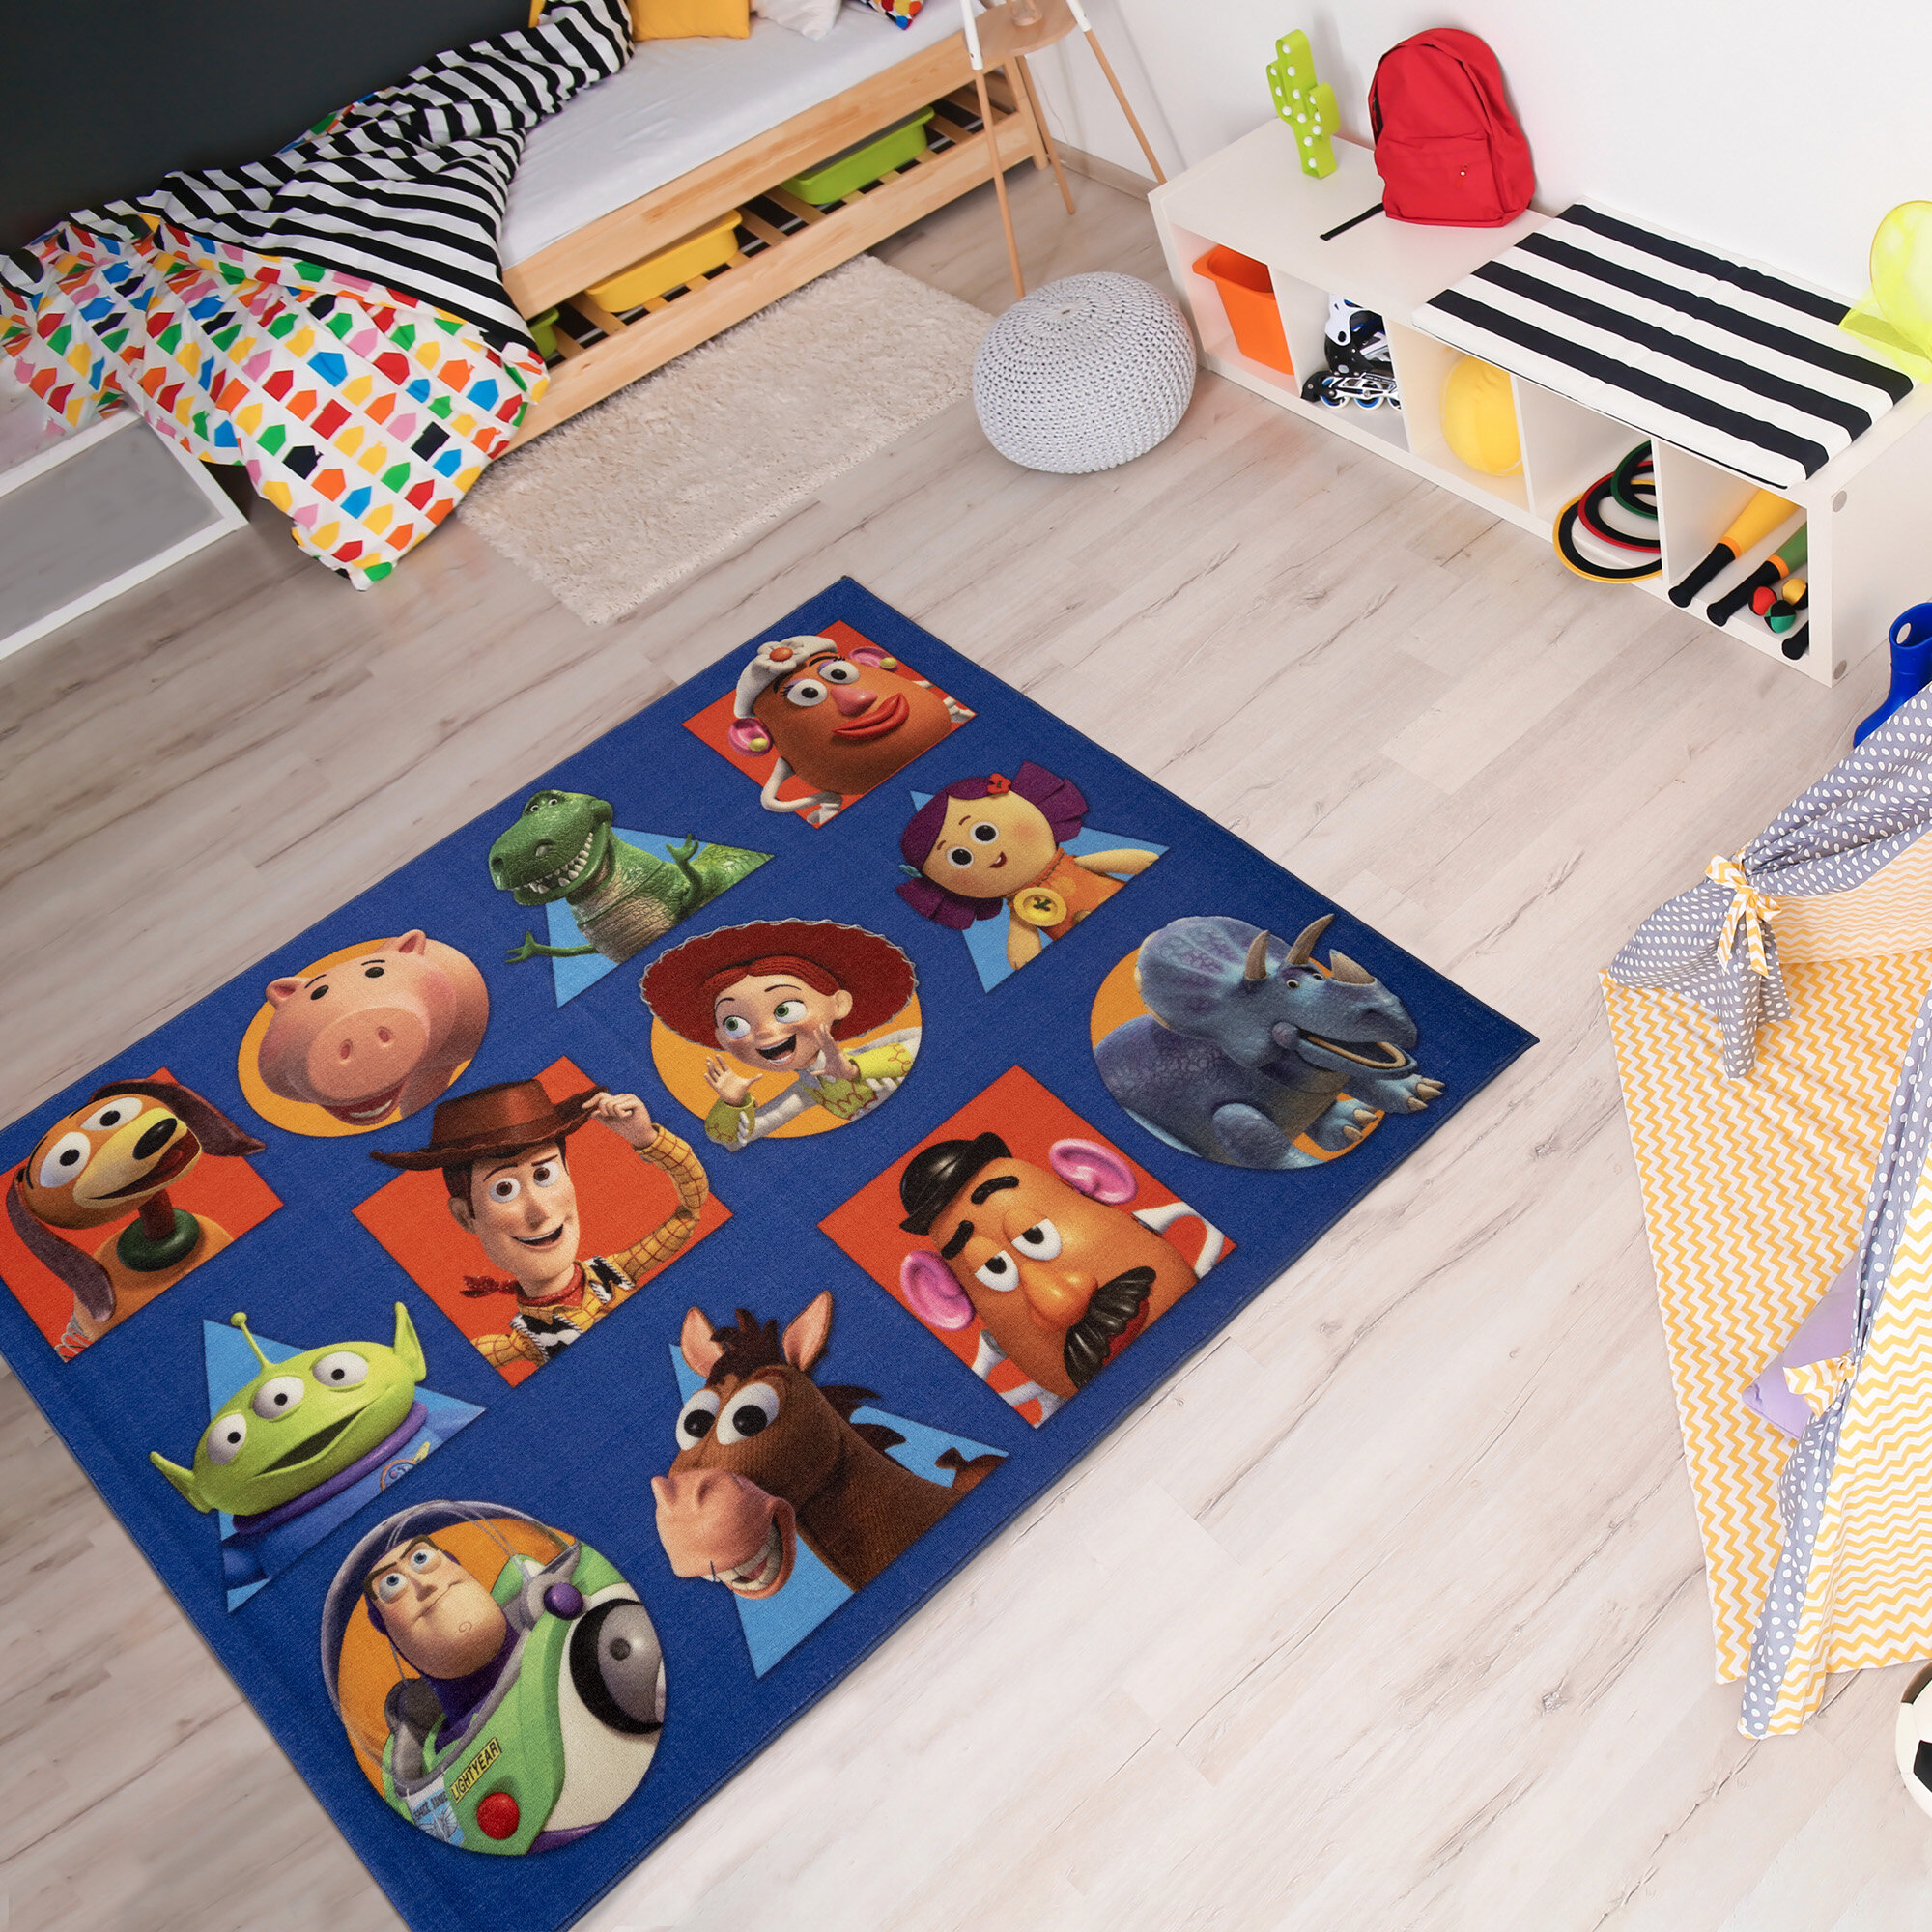 RUGGABLE x Disney and Pixar's Toy Story Doormat - Indoor Outdoor